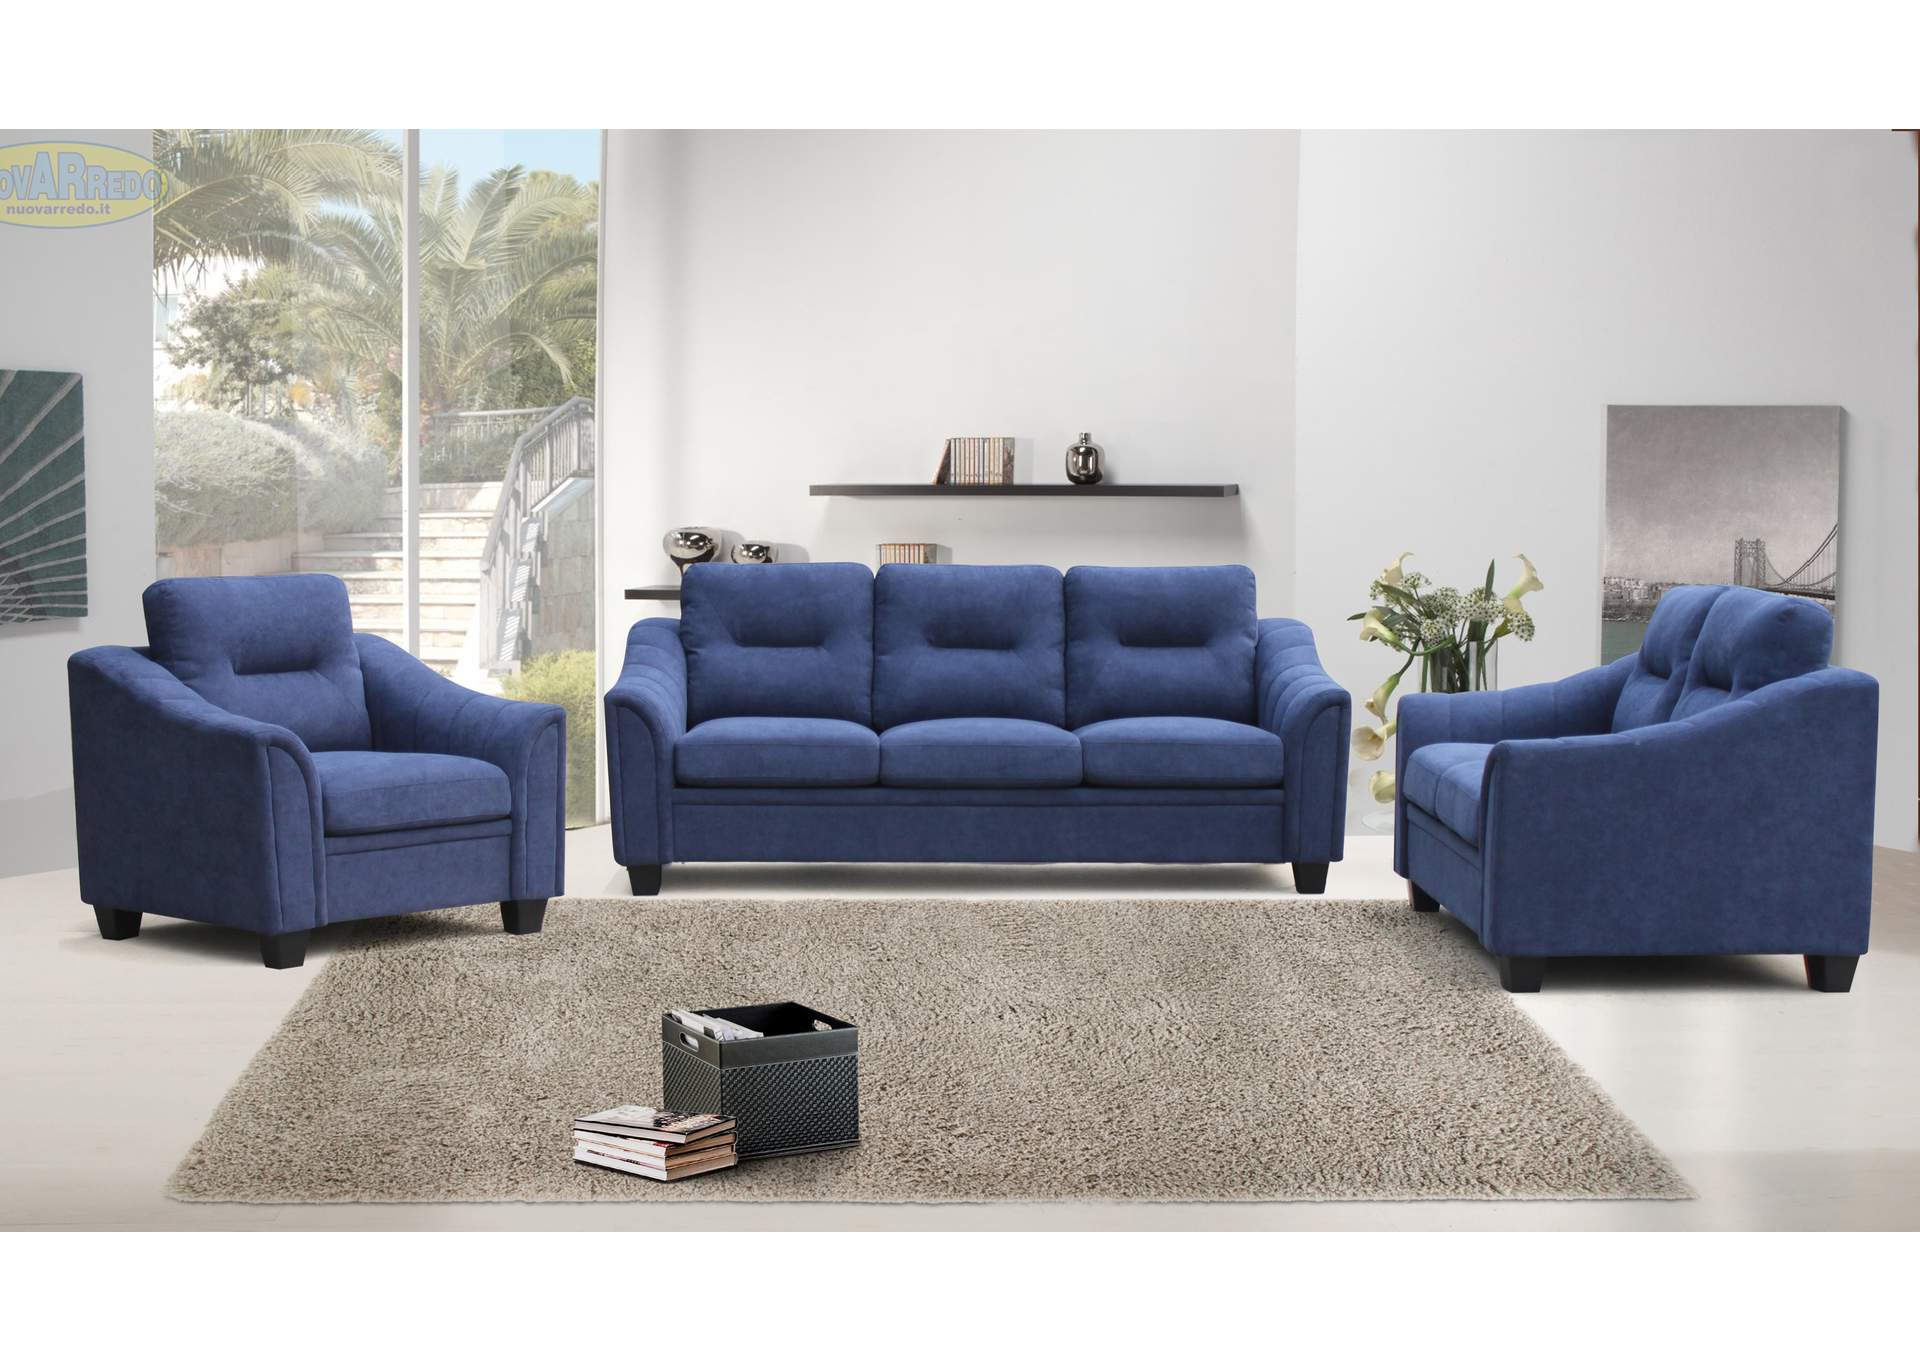 Af Gud Stolt Enhed Sentinel Blue Sofa Captain Ed's Furniture Showroom